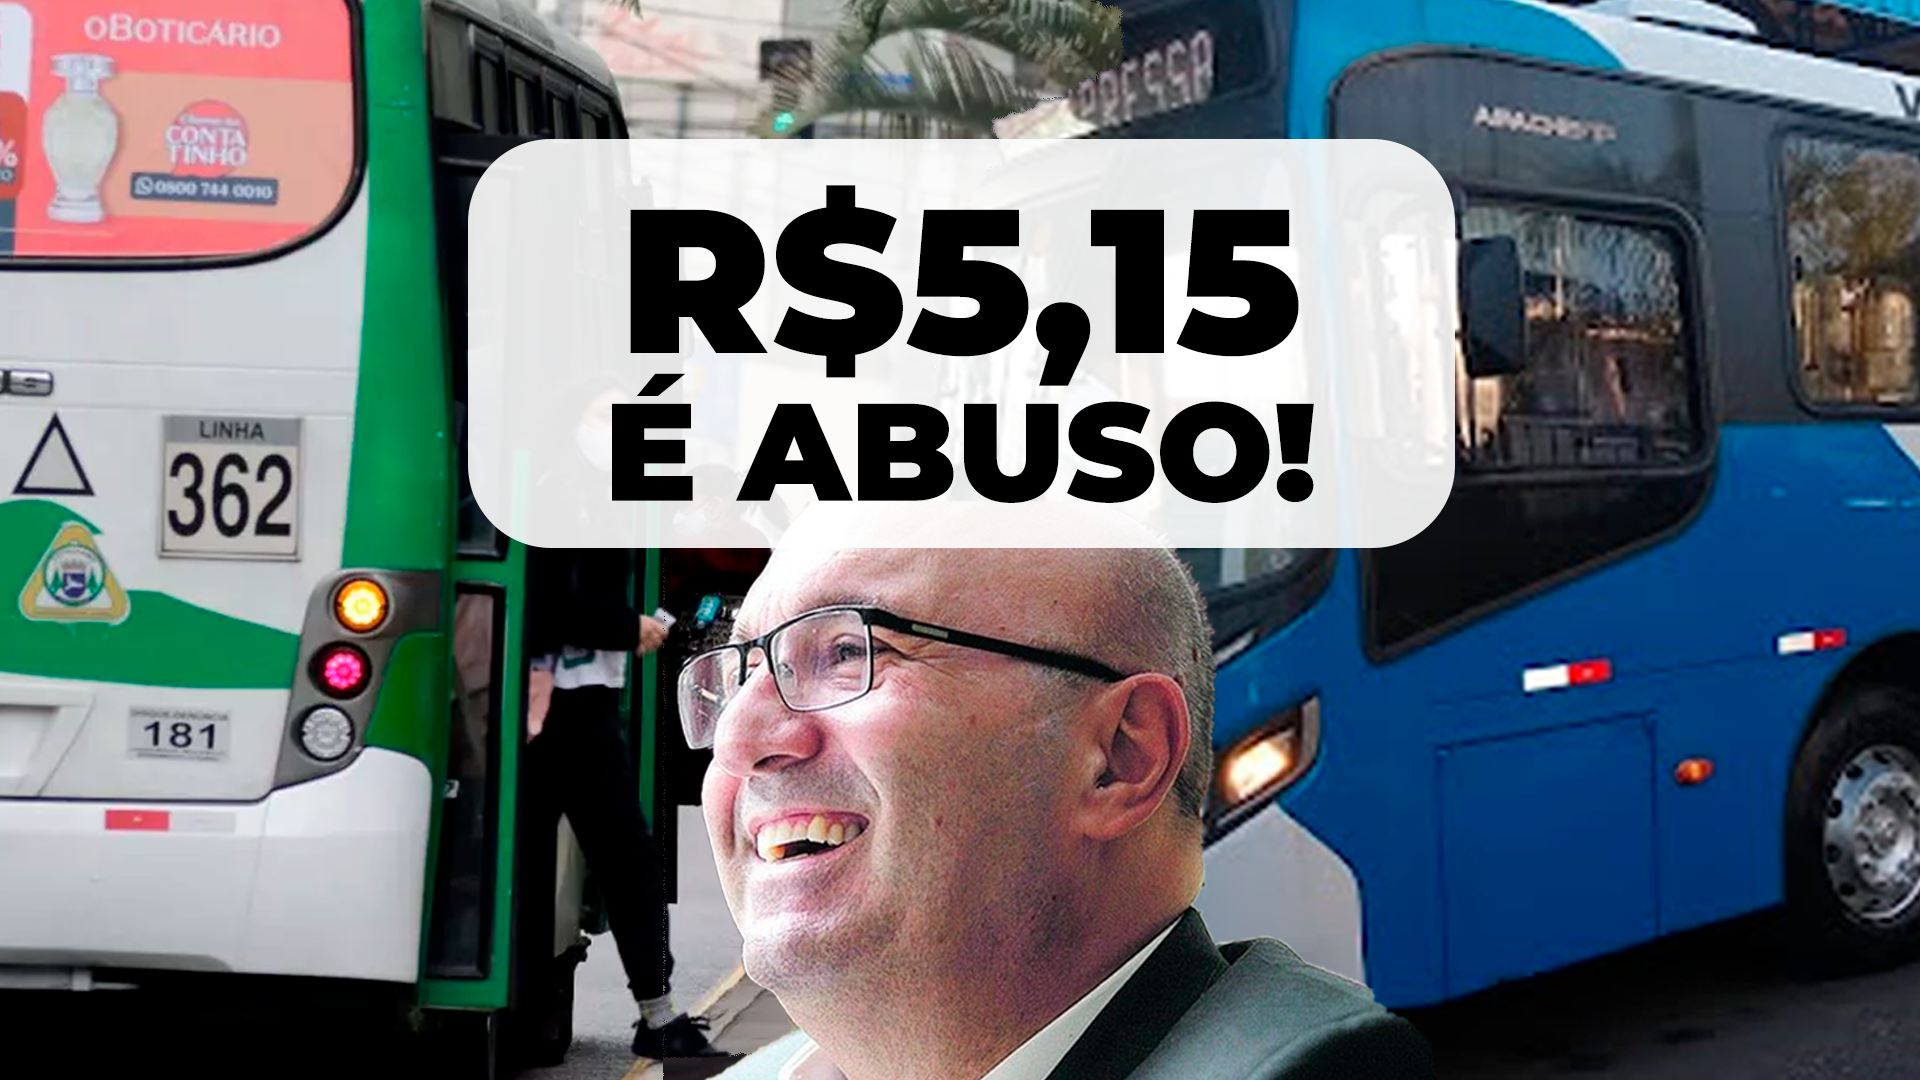 Passagem de ônibus em Campinas passa a custar R$5,15. Assine contra esse absurdo!